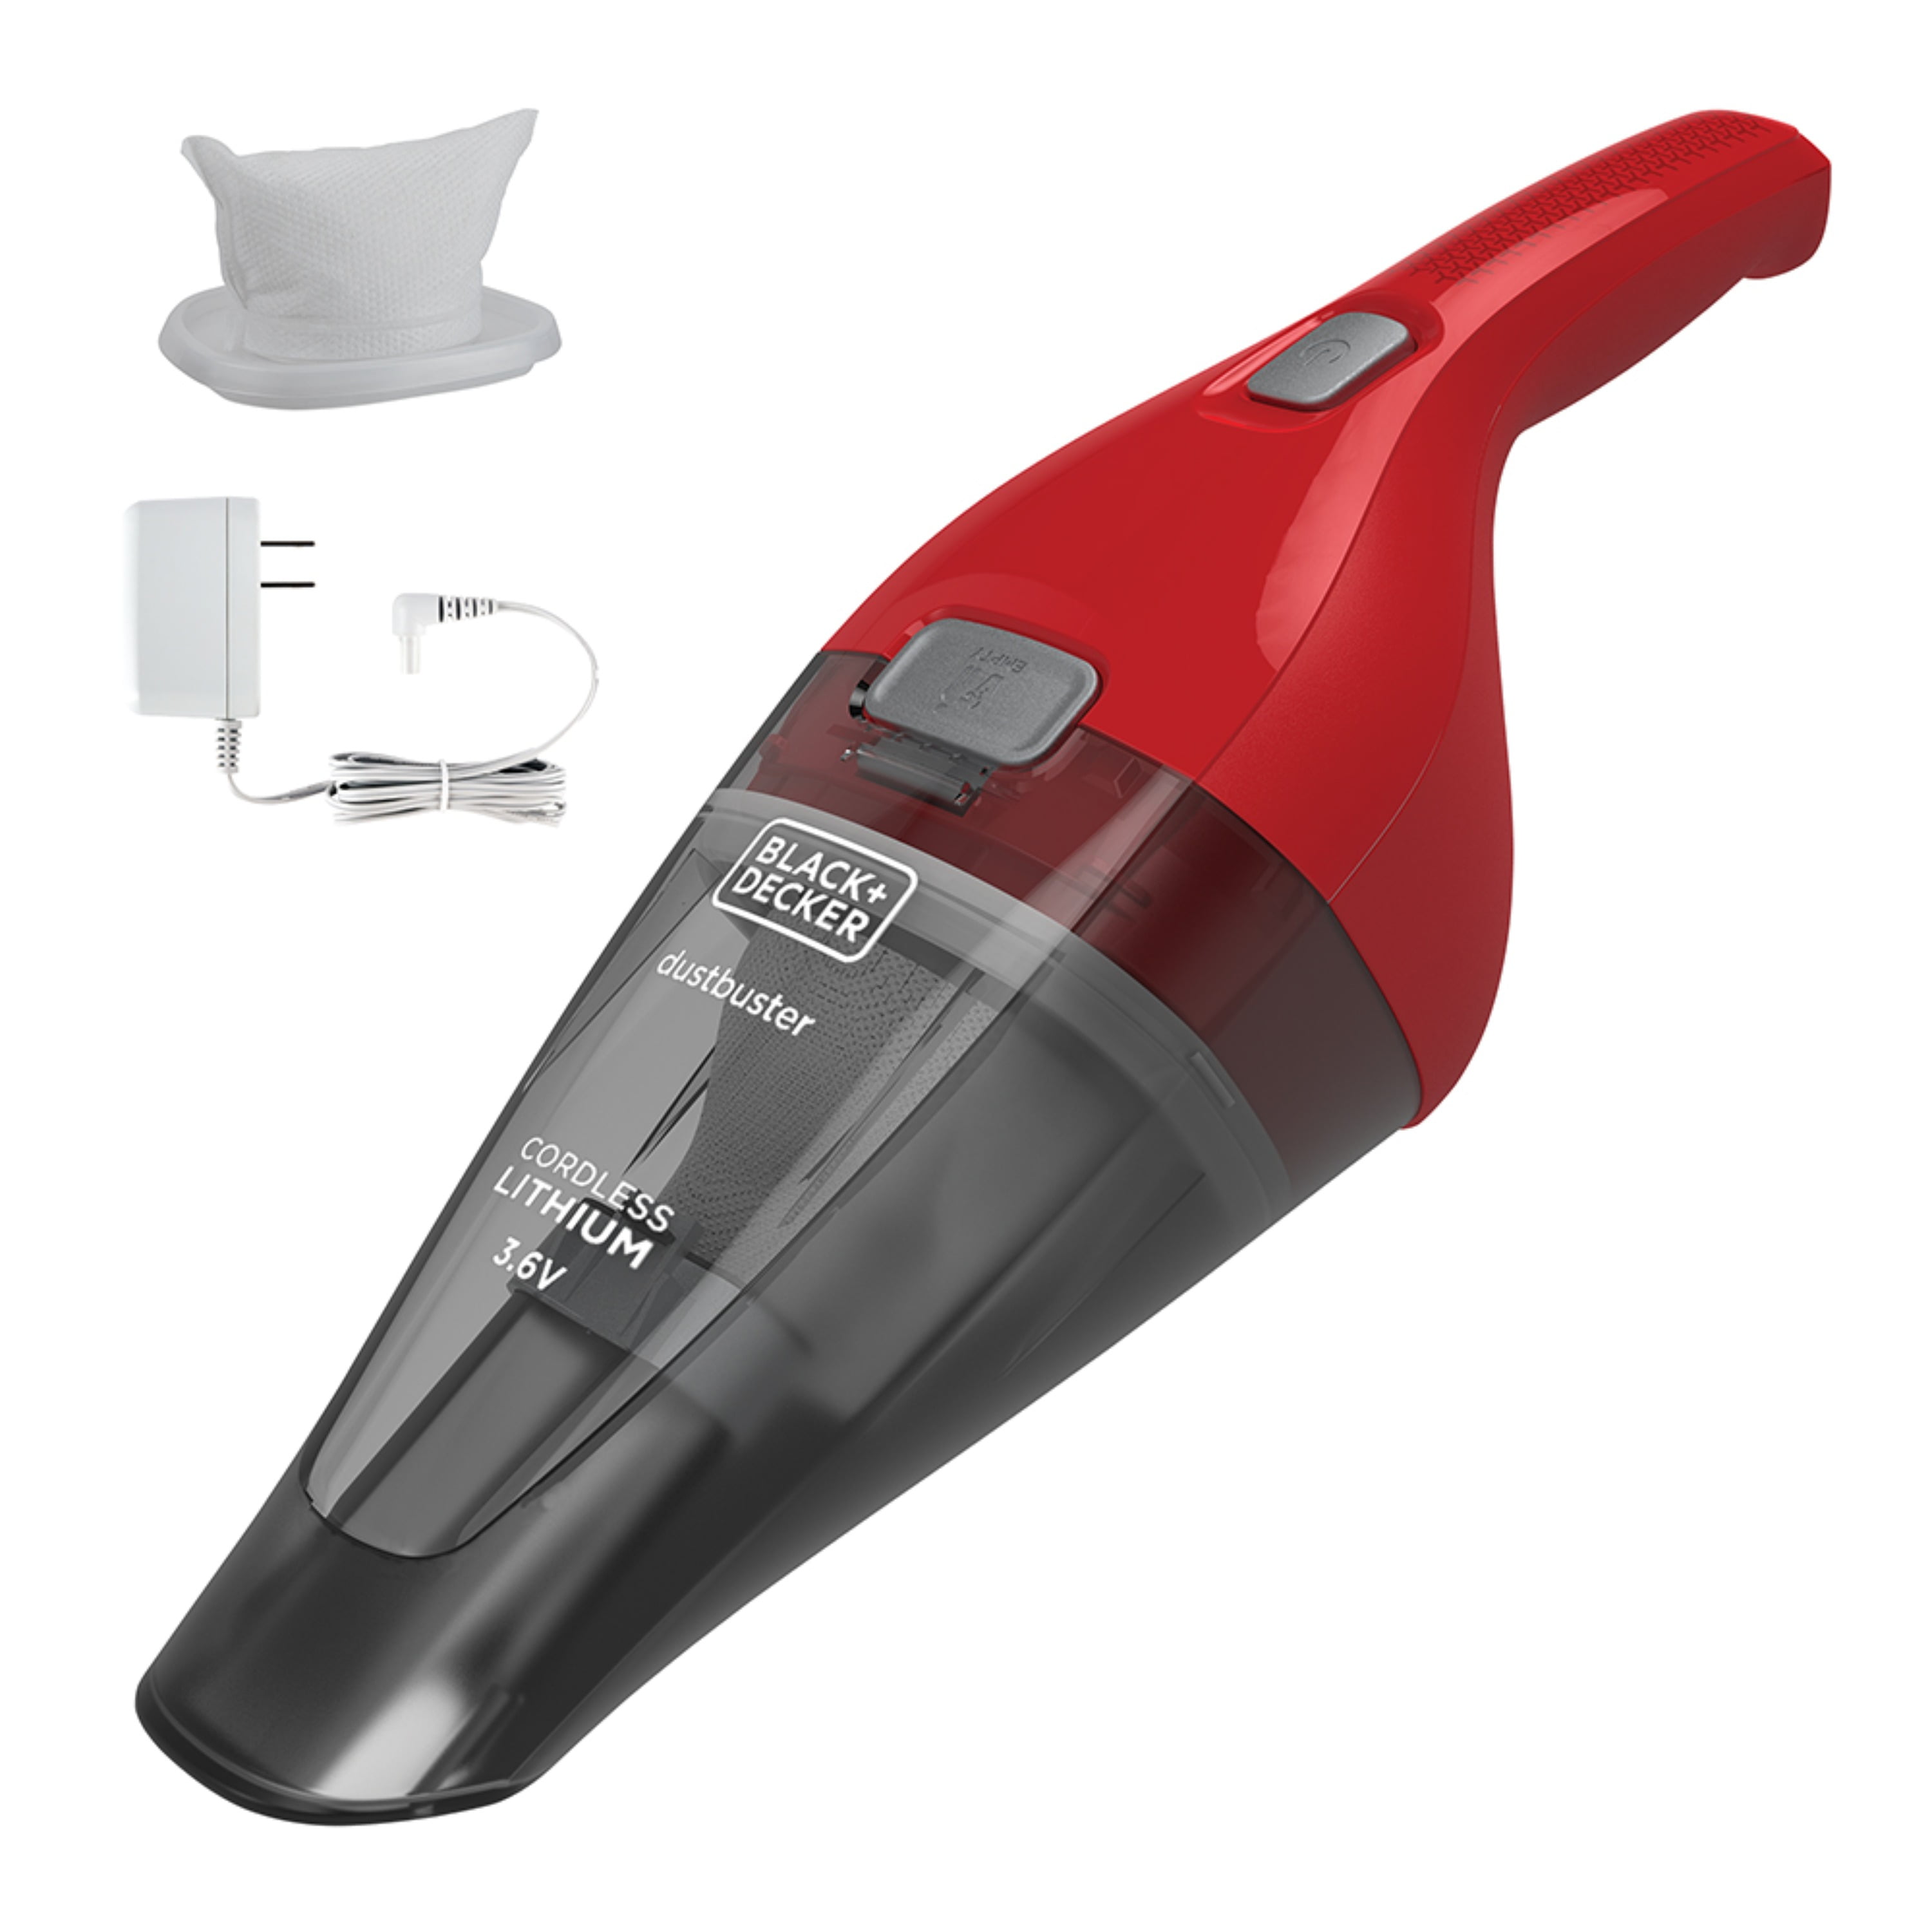 Dustbuster Quickclean Pet Cordless Handheld Vacuum